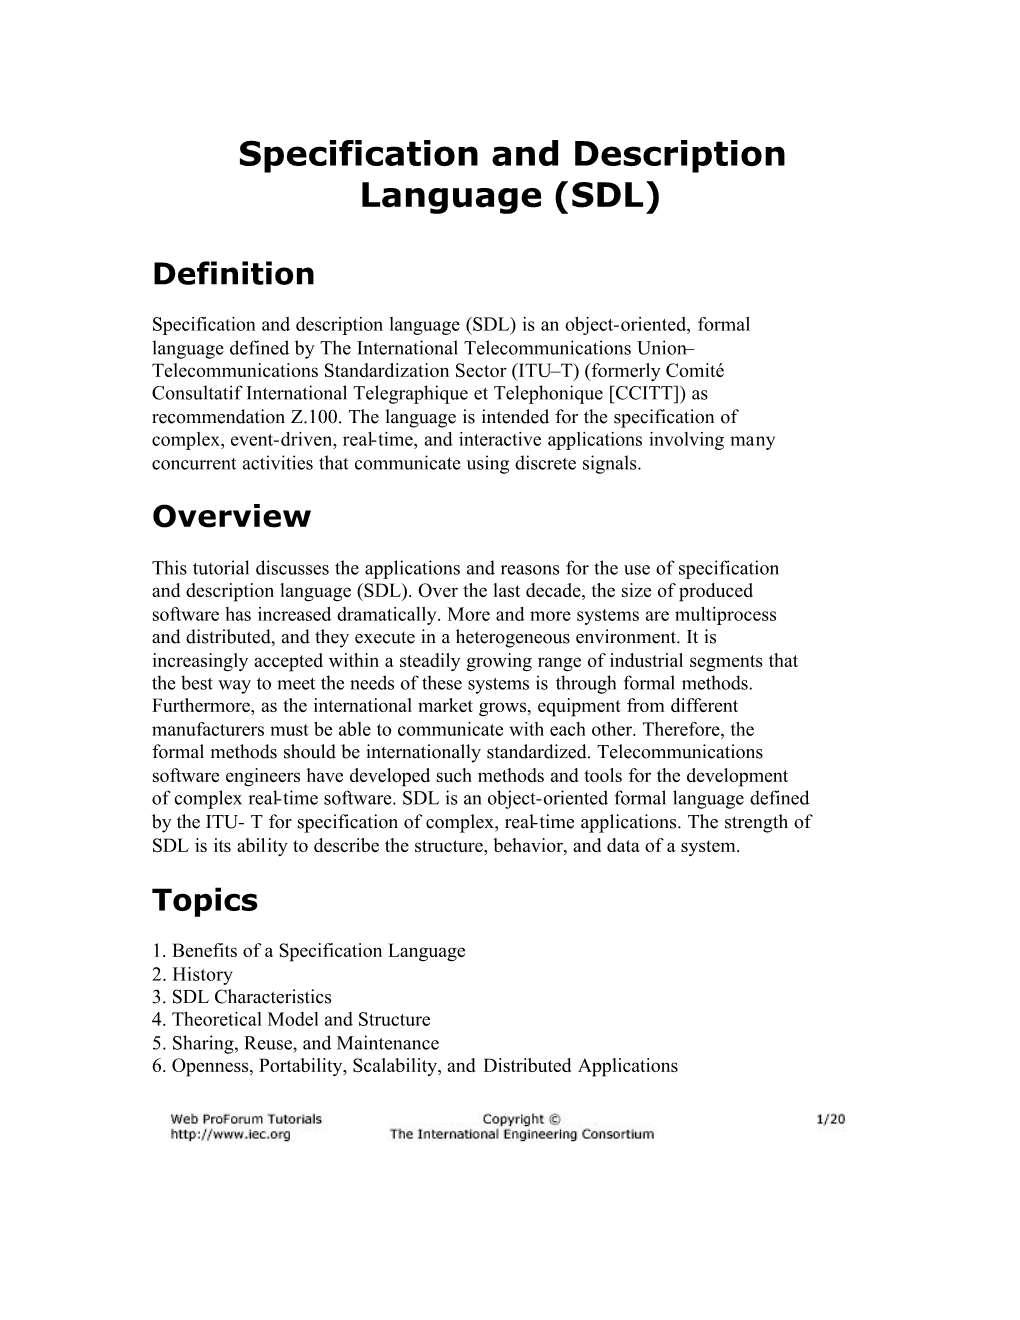 Specification and Description Language (SDL)